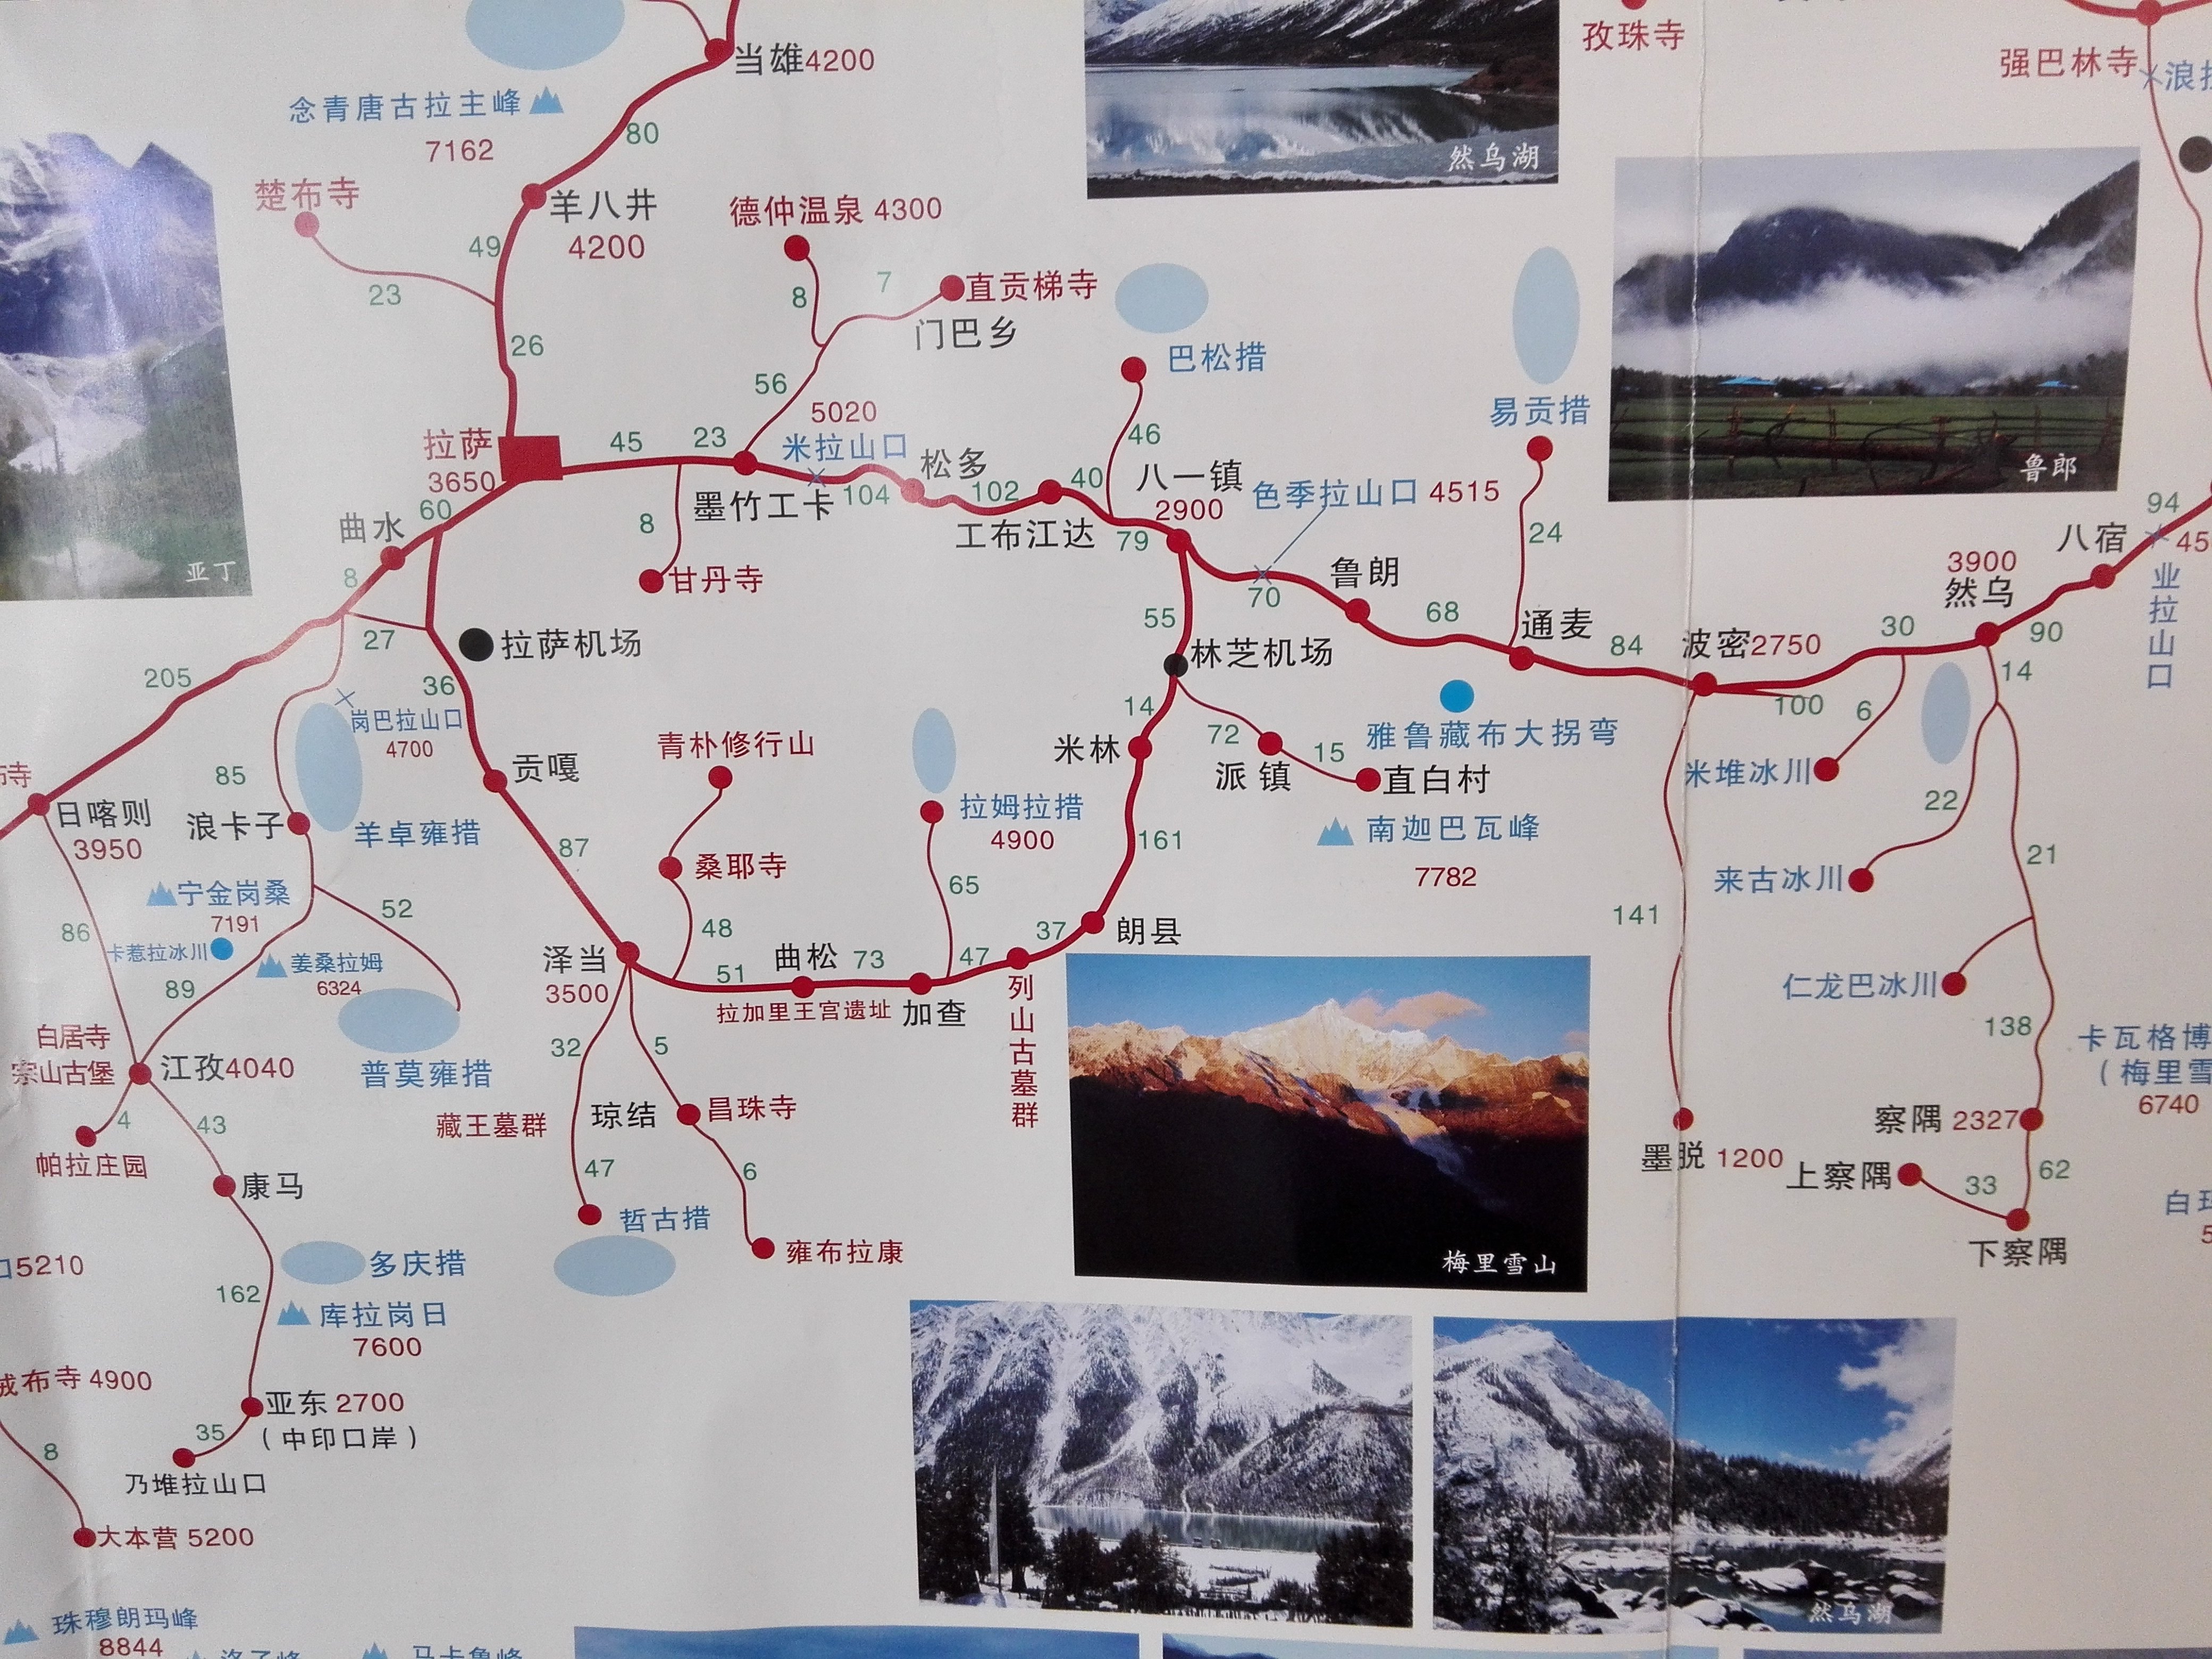 谁能给兄弟给一副去西藏的完美线路图?边玩边有走的那种!